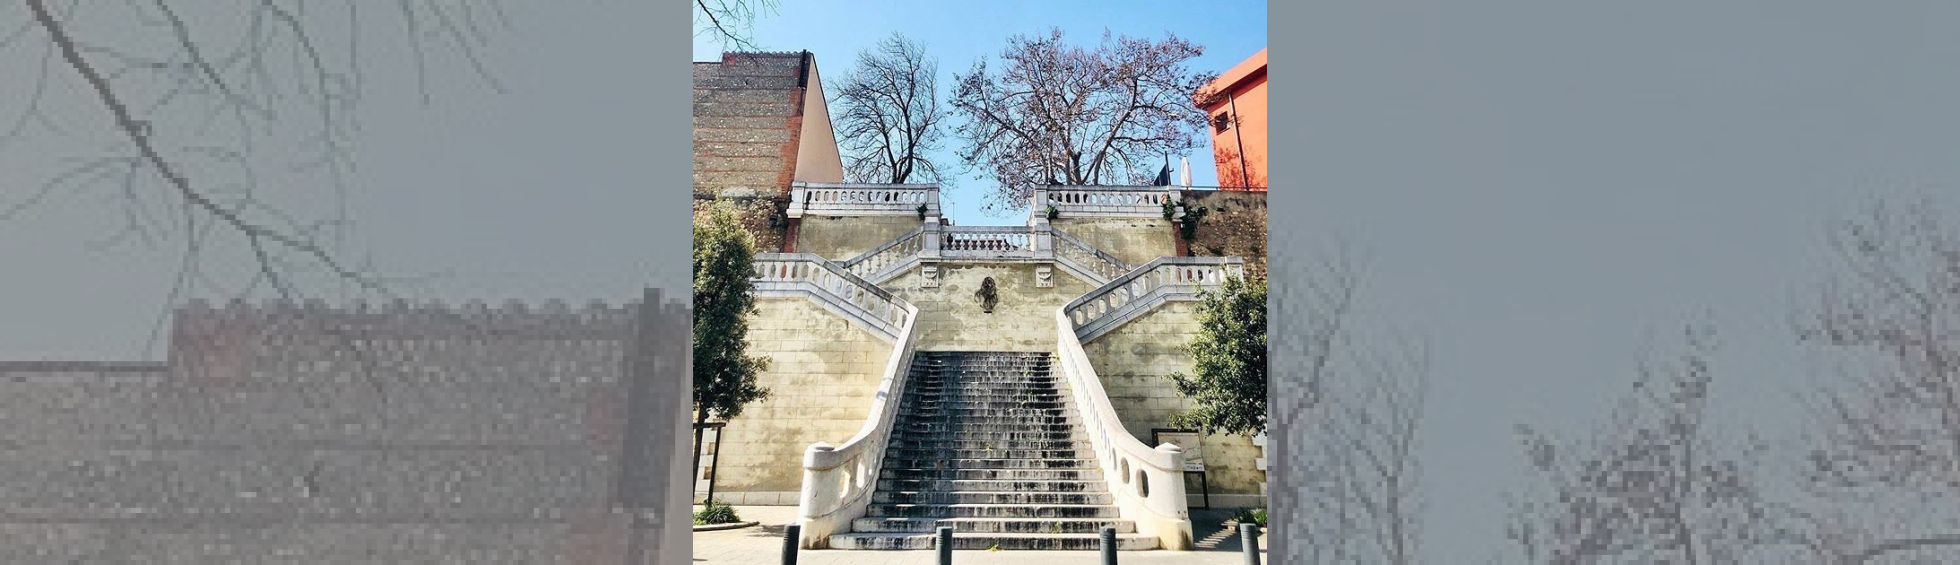 Escalier Molière - Place Jean-Baptiste Molière